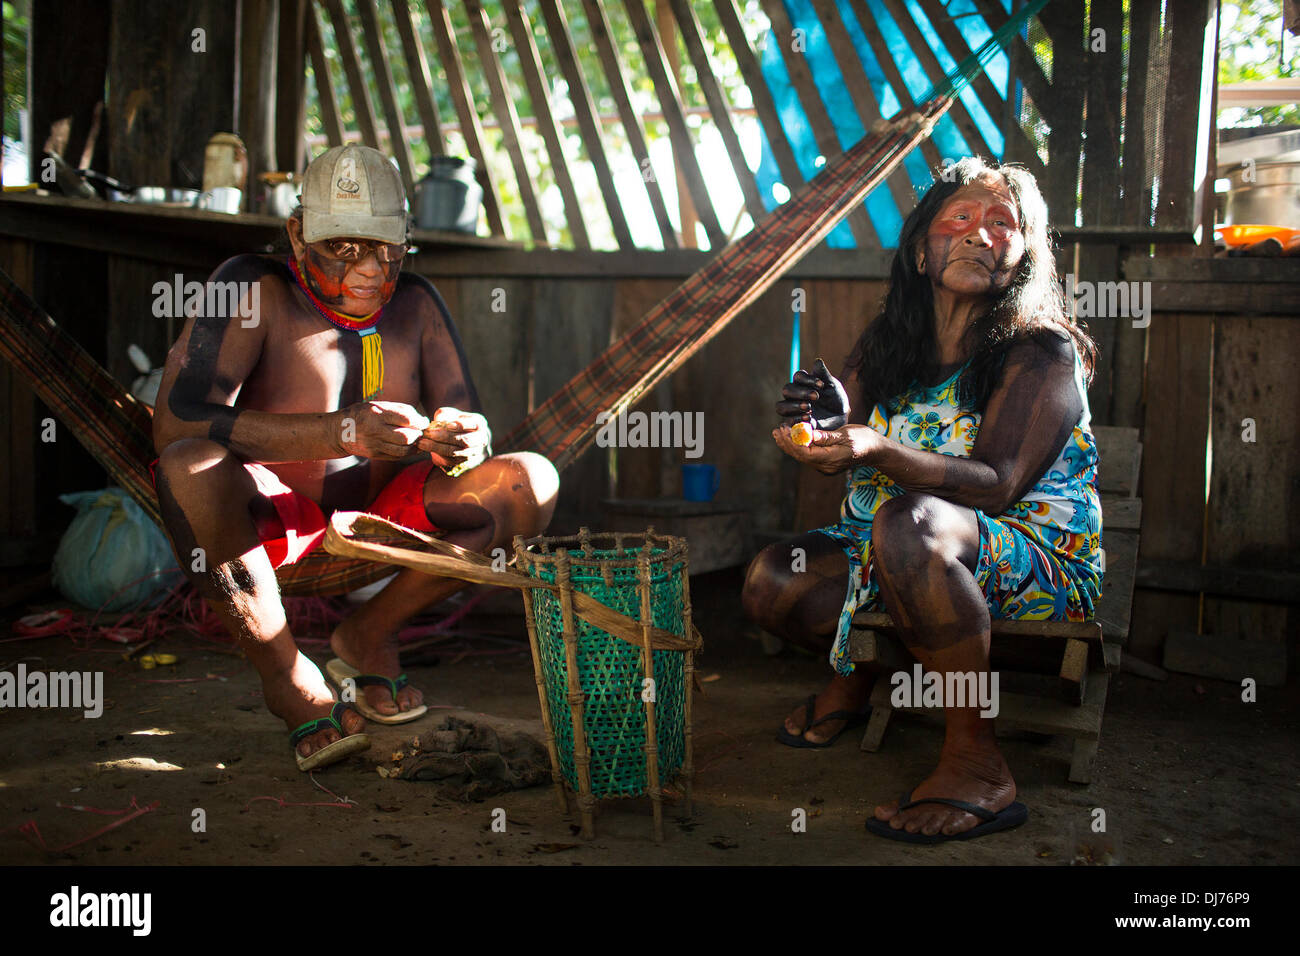 Mayo 3, 2013 - Poti-Kro, Pará, Brasil - Kopri Bepoti y su esposa son los dos ancianos de Poti-Kro. Es responsabilidad de los ancianos para pasar sobre la tribu mitos y cuentos. Los aldeanos no están dispuestos a compartir estas historias a los forasteros, porque son considerados "propiedad de los ancianos." Las personas viven en el Xikrin Bacaja, un afluente del río Xingu, donde la construcción de la represa Belo Monte está alcanzando picos de construcción. Algunos científicos advierten que el nivel del agua de la Bacaja disminuirá vertiginosamente debido a la presa. (Crédito de la Imagen: © Taylor Weidman/Cable/ZUMAPRESS.com) Zuma. Foto de stock